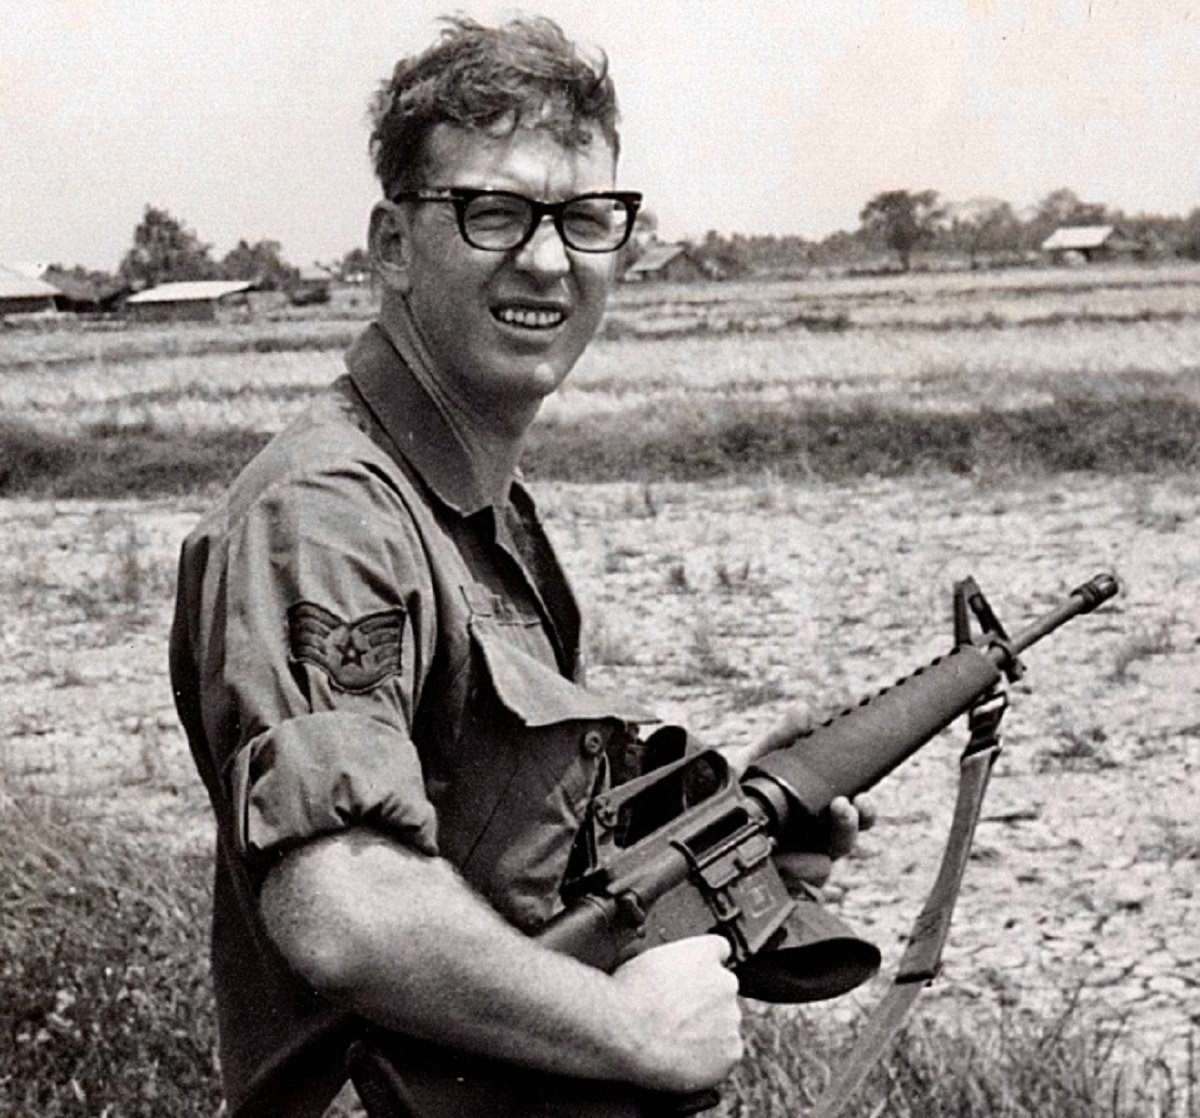 Robert Jack Adams holding gun in Vietnam